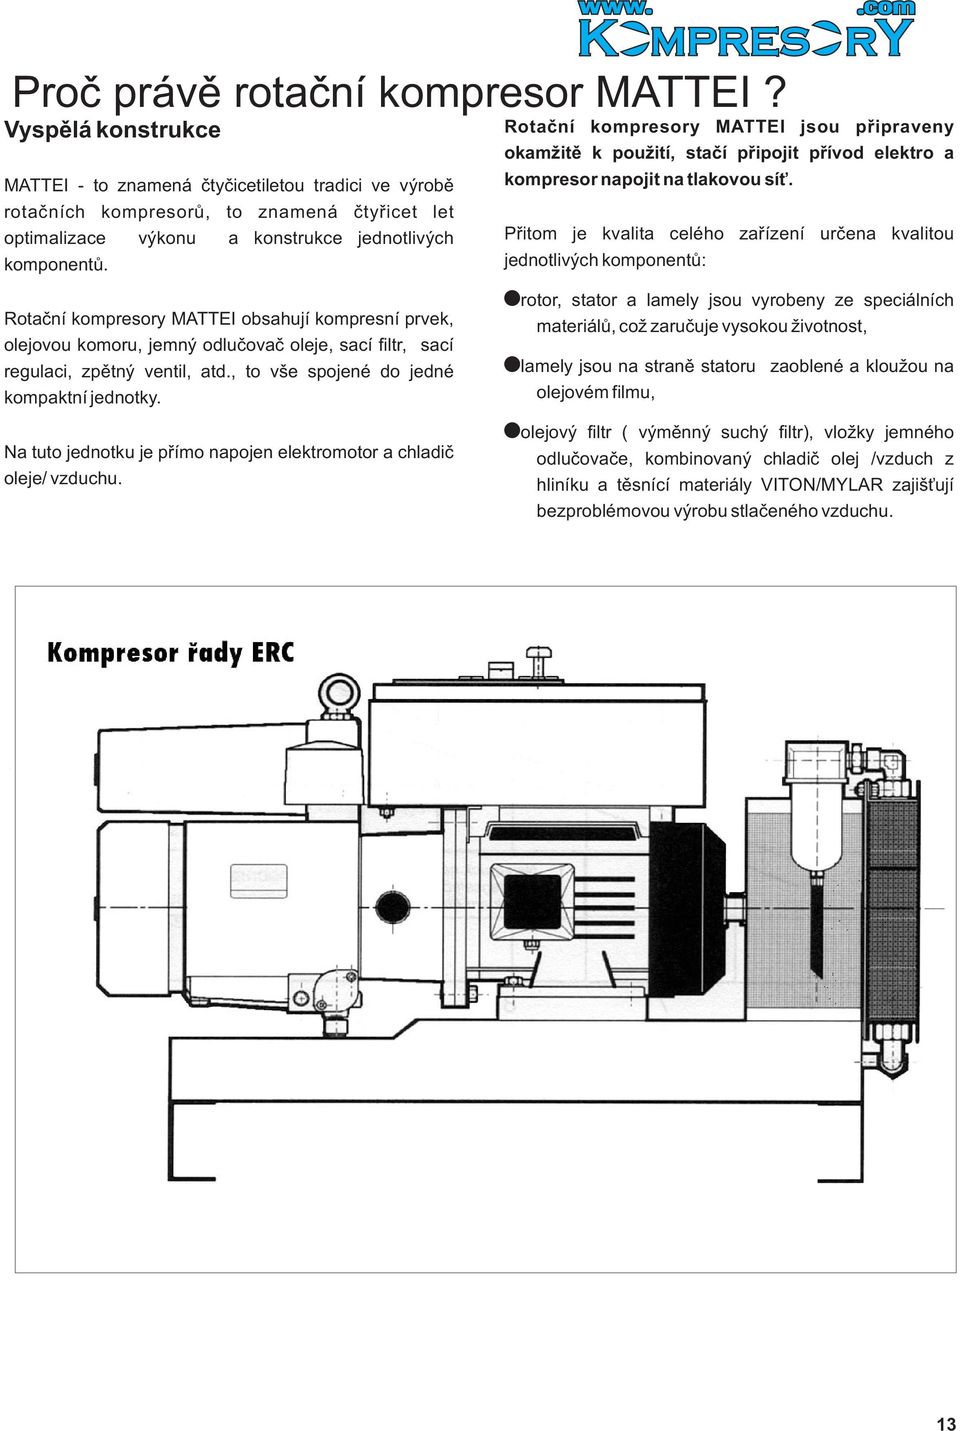 Rotaèní kompresory MATTEI obsahují kompresní prvek, olejovou komoru, jemný odluèovaè oleje, sací filtr, sací regulaci, zpìtný ventil, atd., to vše spojené do jedné kompaktní jednotky.